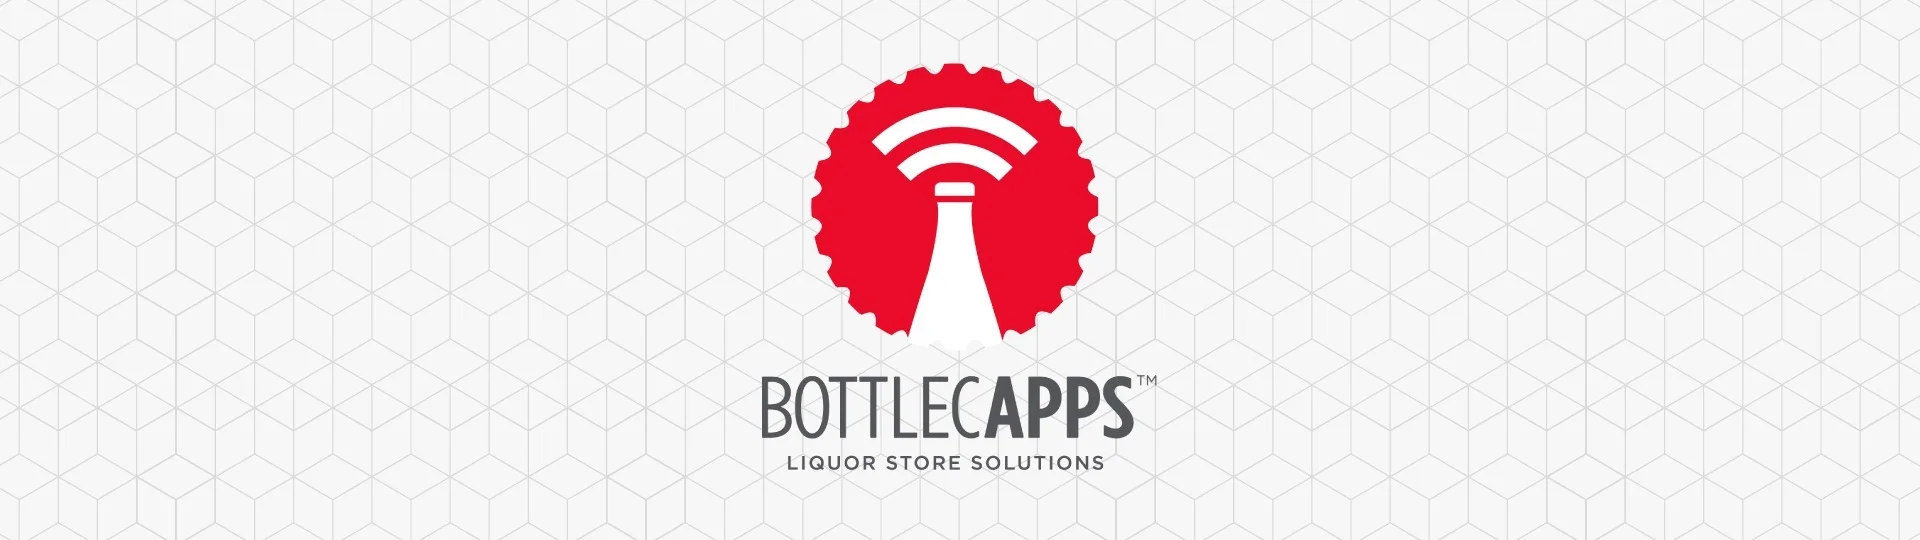 Bottlecapp's & test 